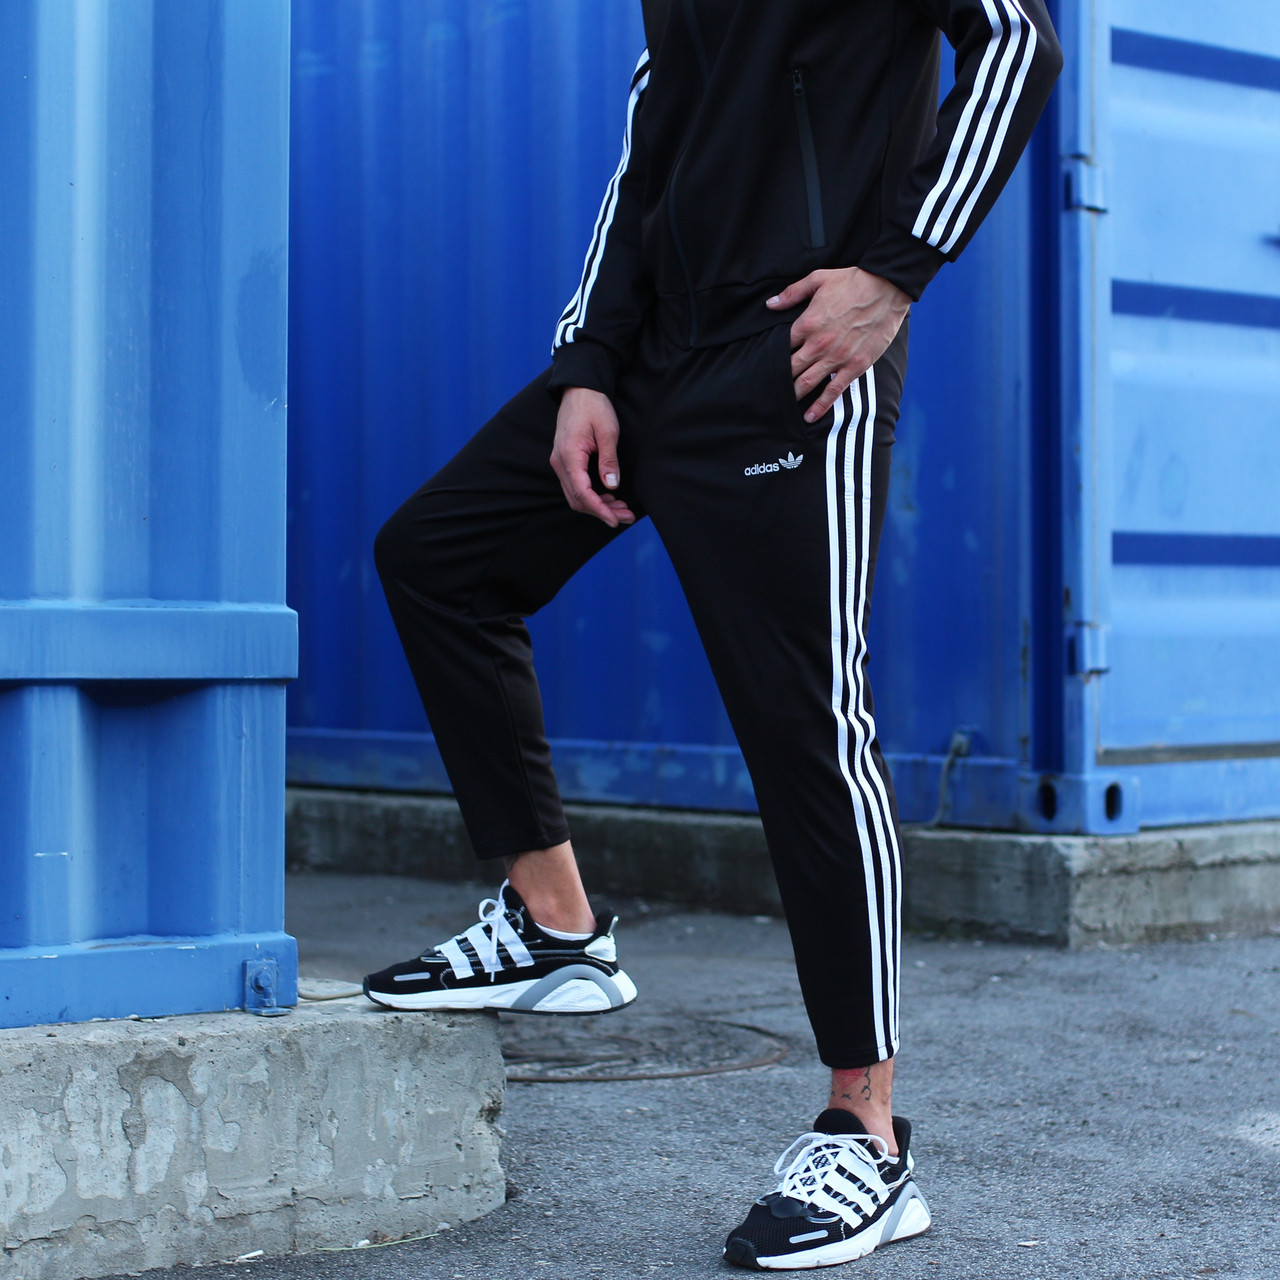 Спортивные штаны Adidas мужские укороченные осенние | весенние черные : 499  грн. - Спортивные штаны Киев на BESPLATKA.ua 88232234